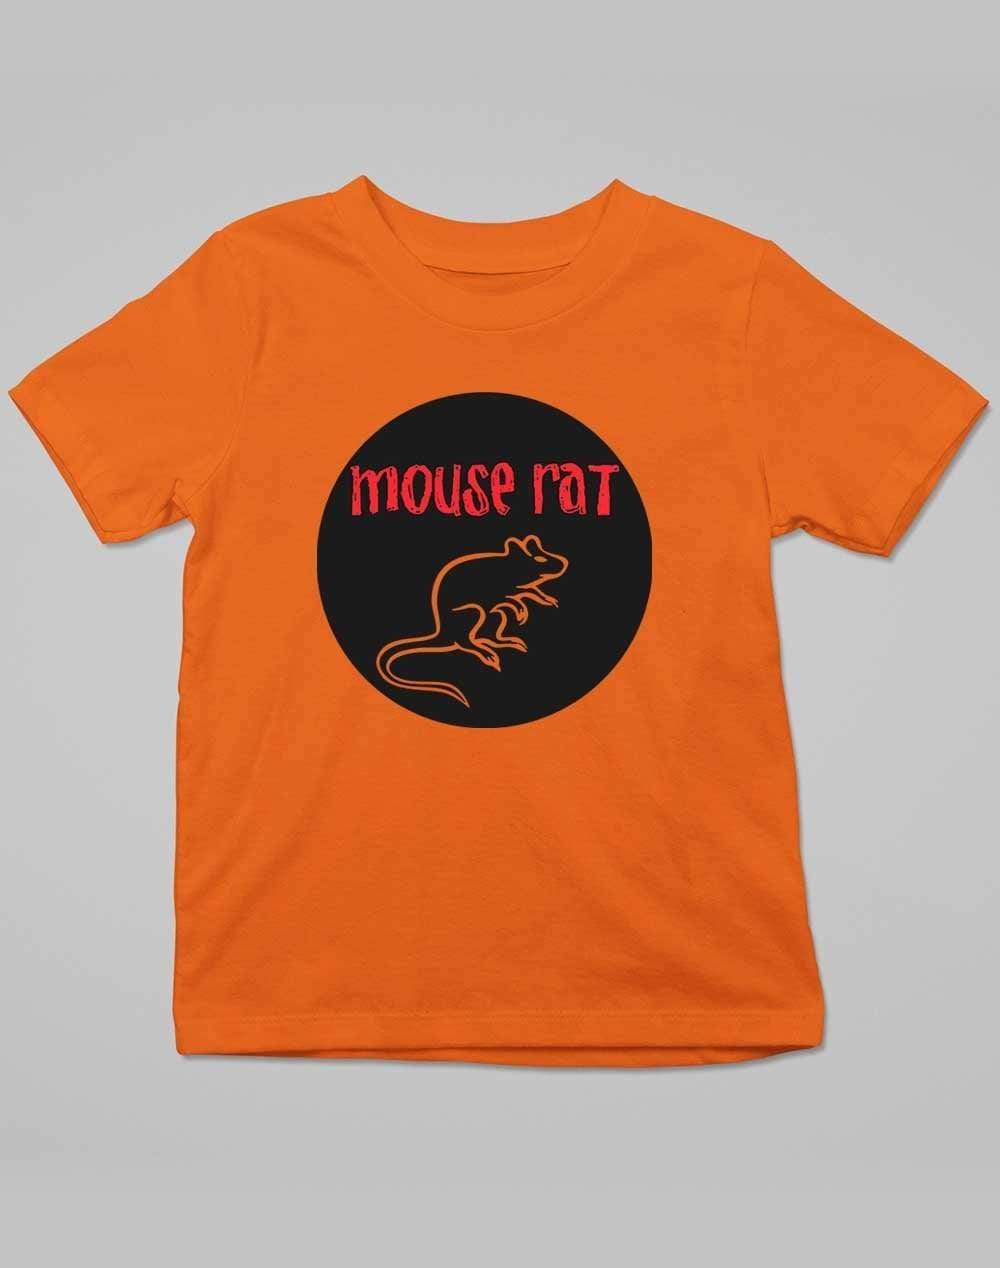 Mouse Rat Round Logo Kids T-Shirt 3-4 years / Orange  - Off World Tees